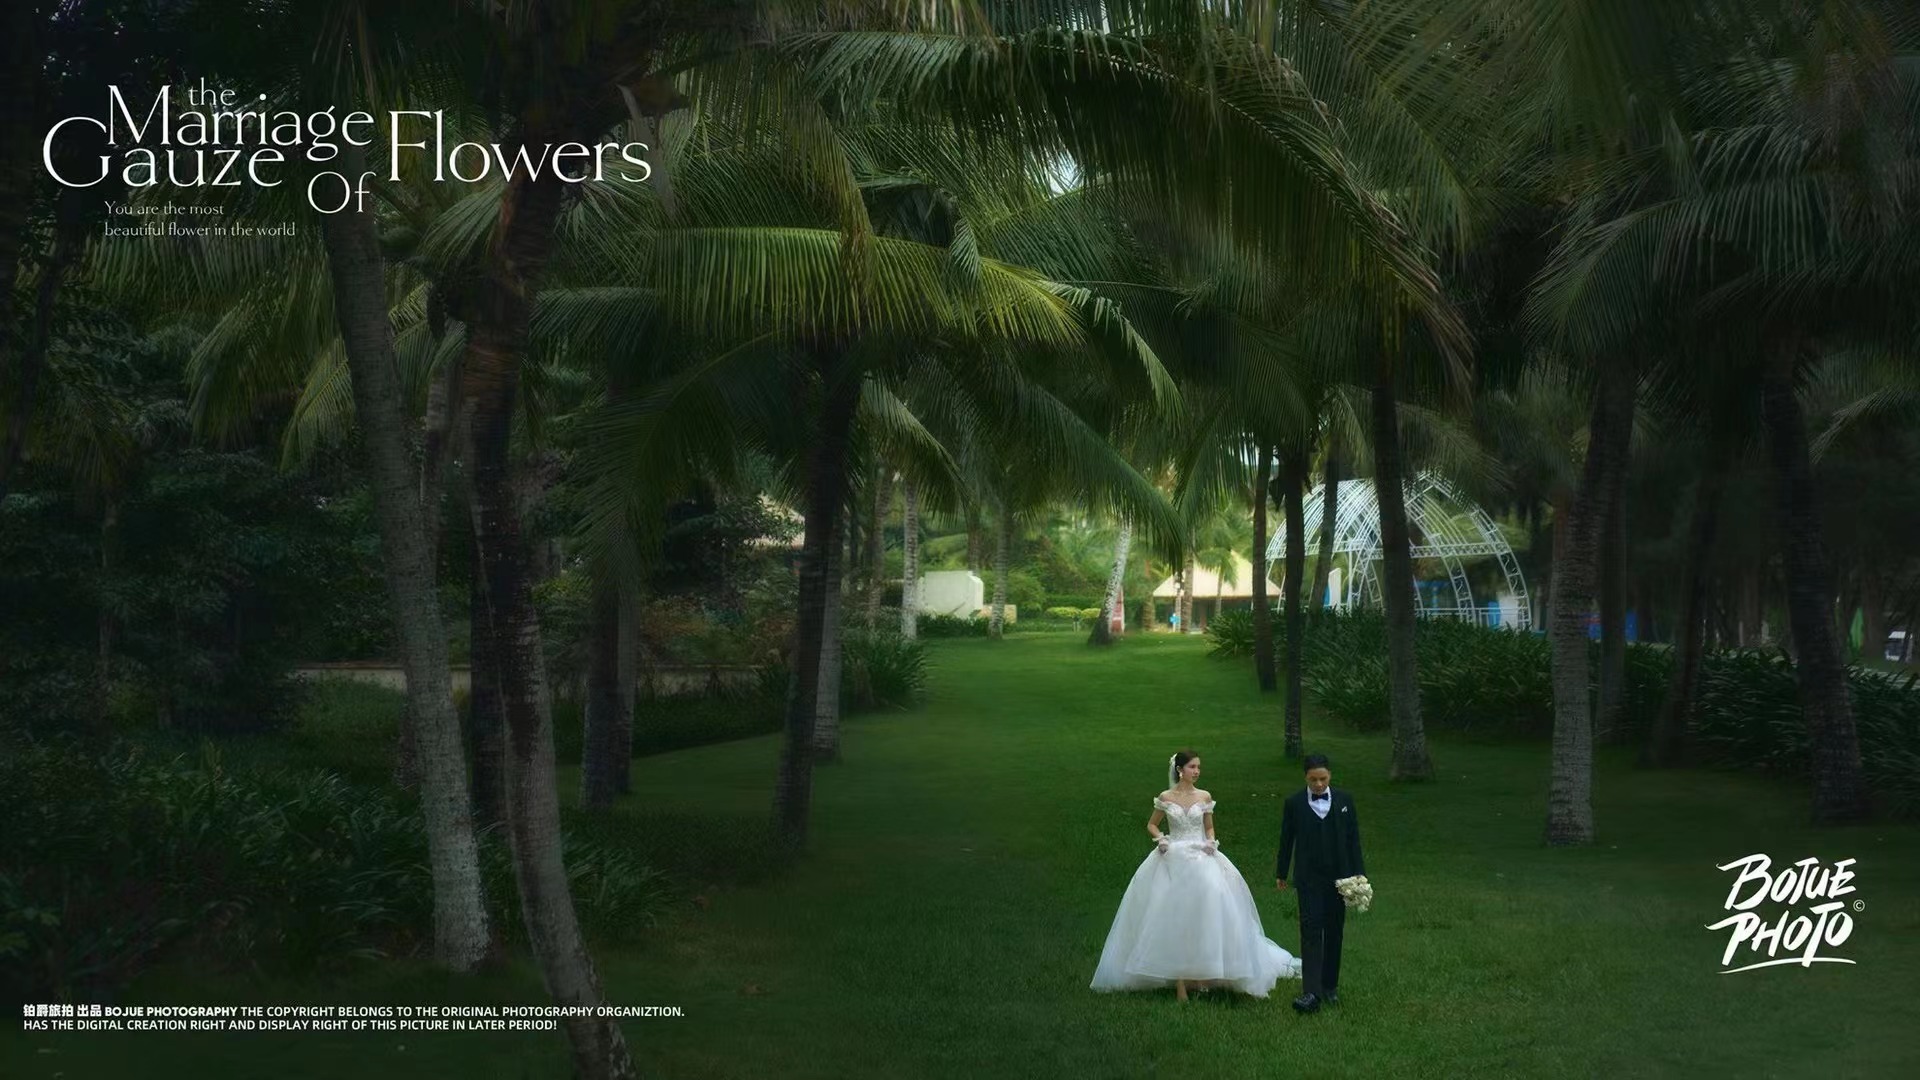 感謝鉑爵旅拍三亞婚紗攝影小隊 讓我們如愿收獲完美婚紗照